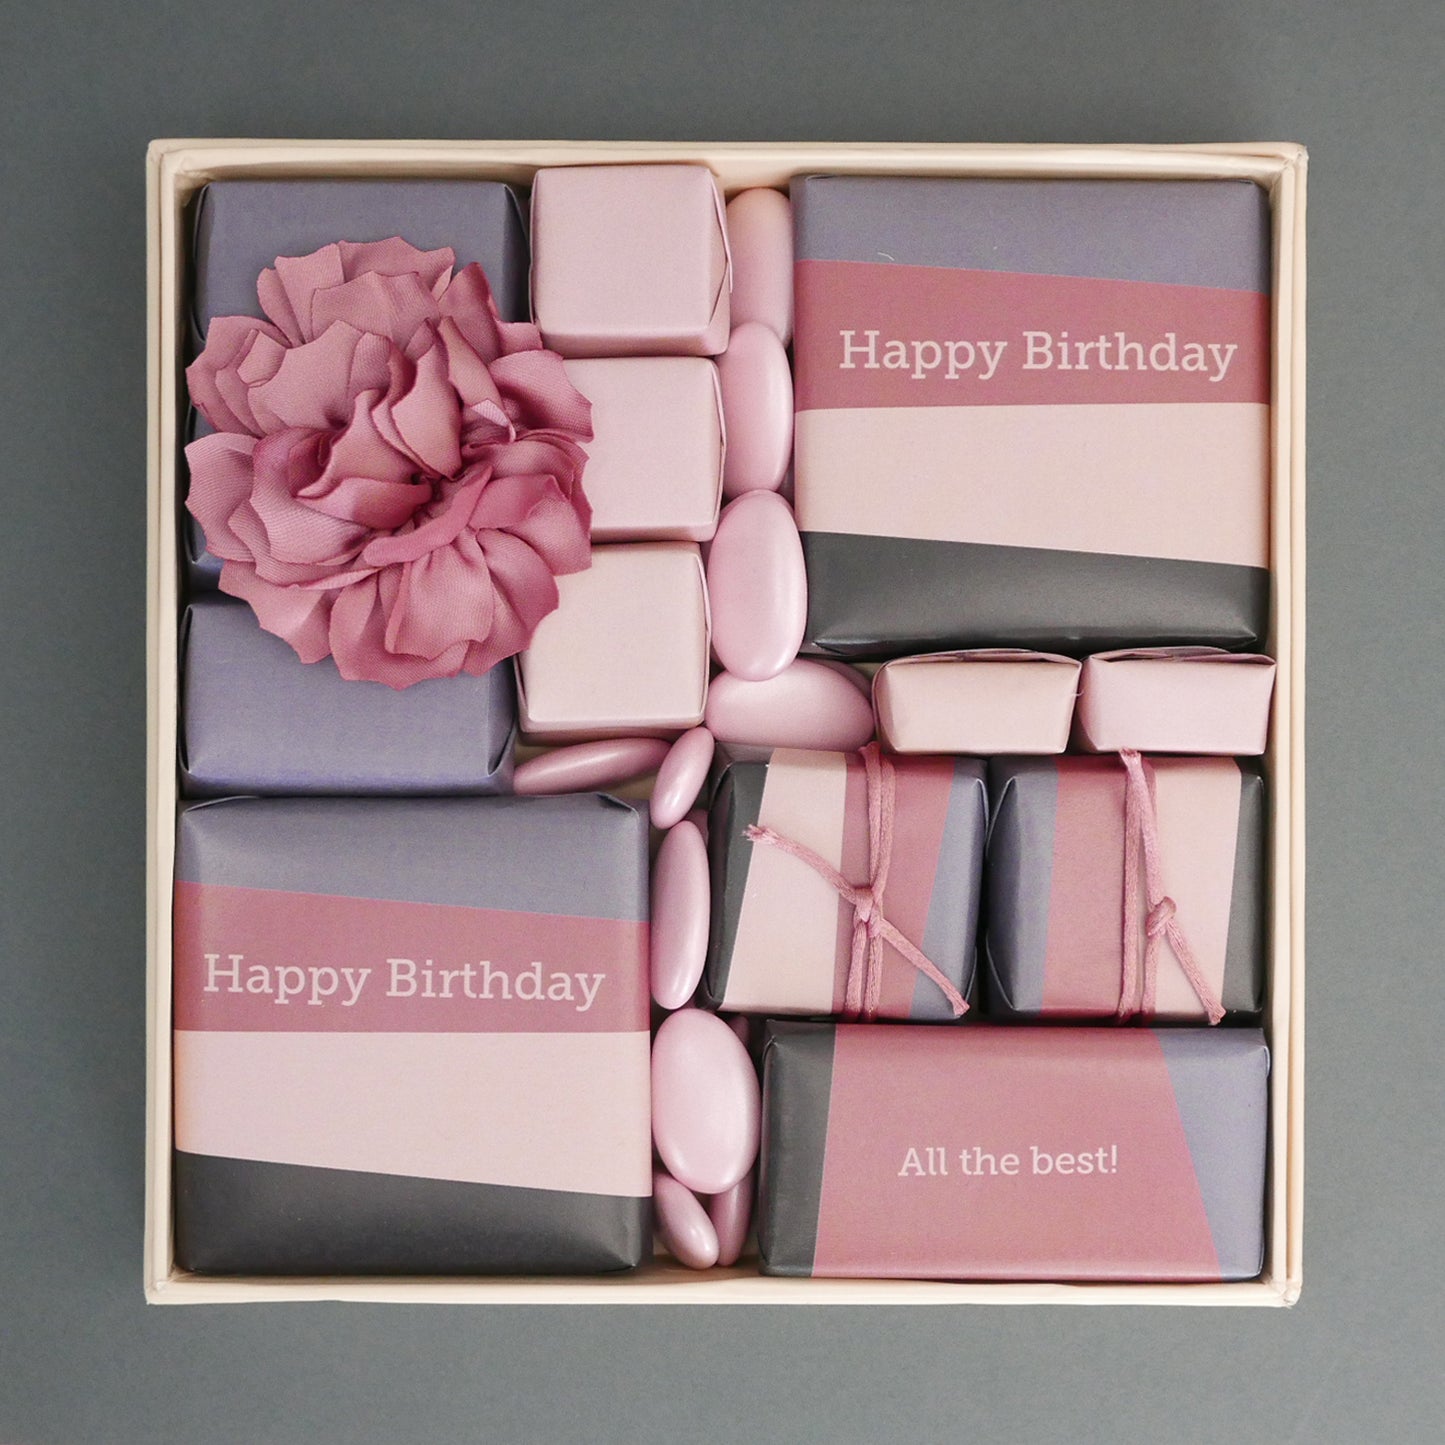 Best Wishes - Birthday Chocolate Box